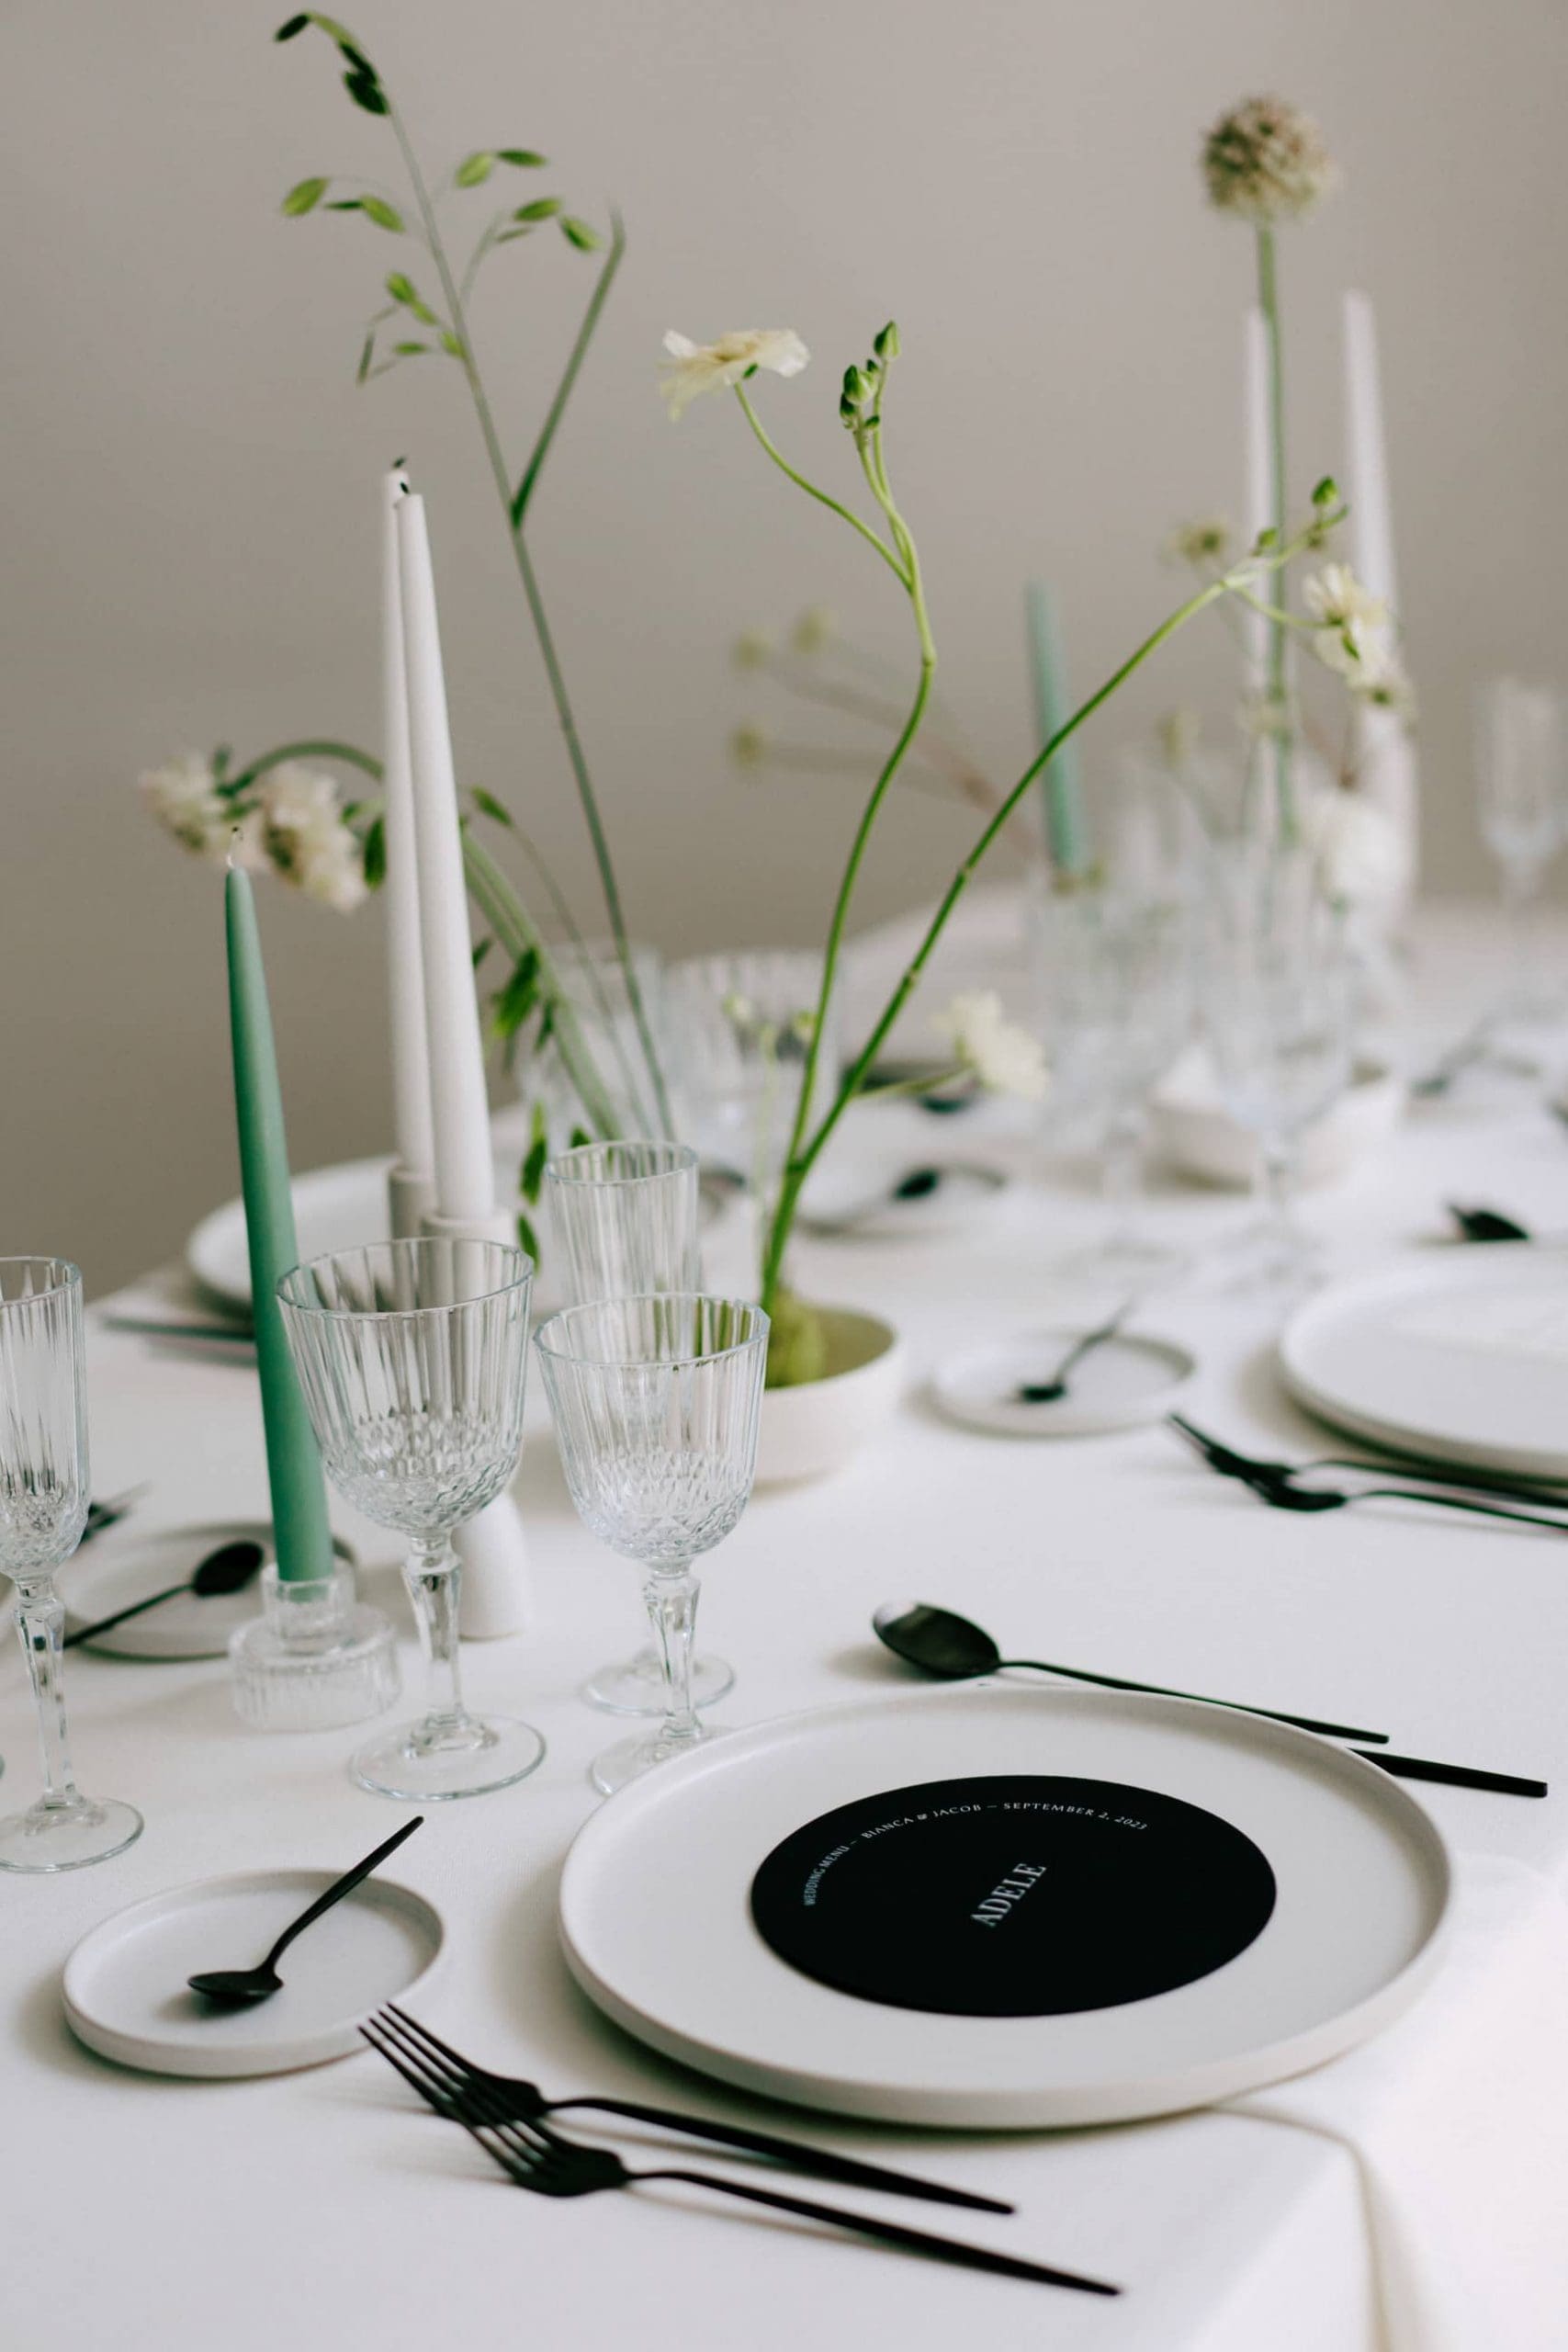 IMesa de boda con Ikebanas florales y minuta en color negro para contraste, perfecta combinación de elegancia y diseño.